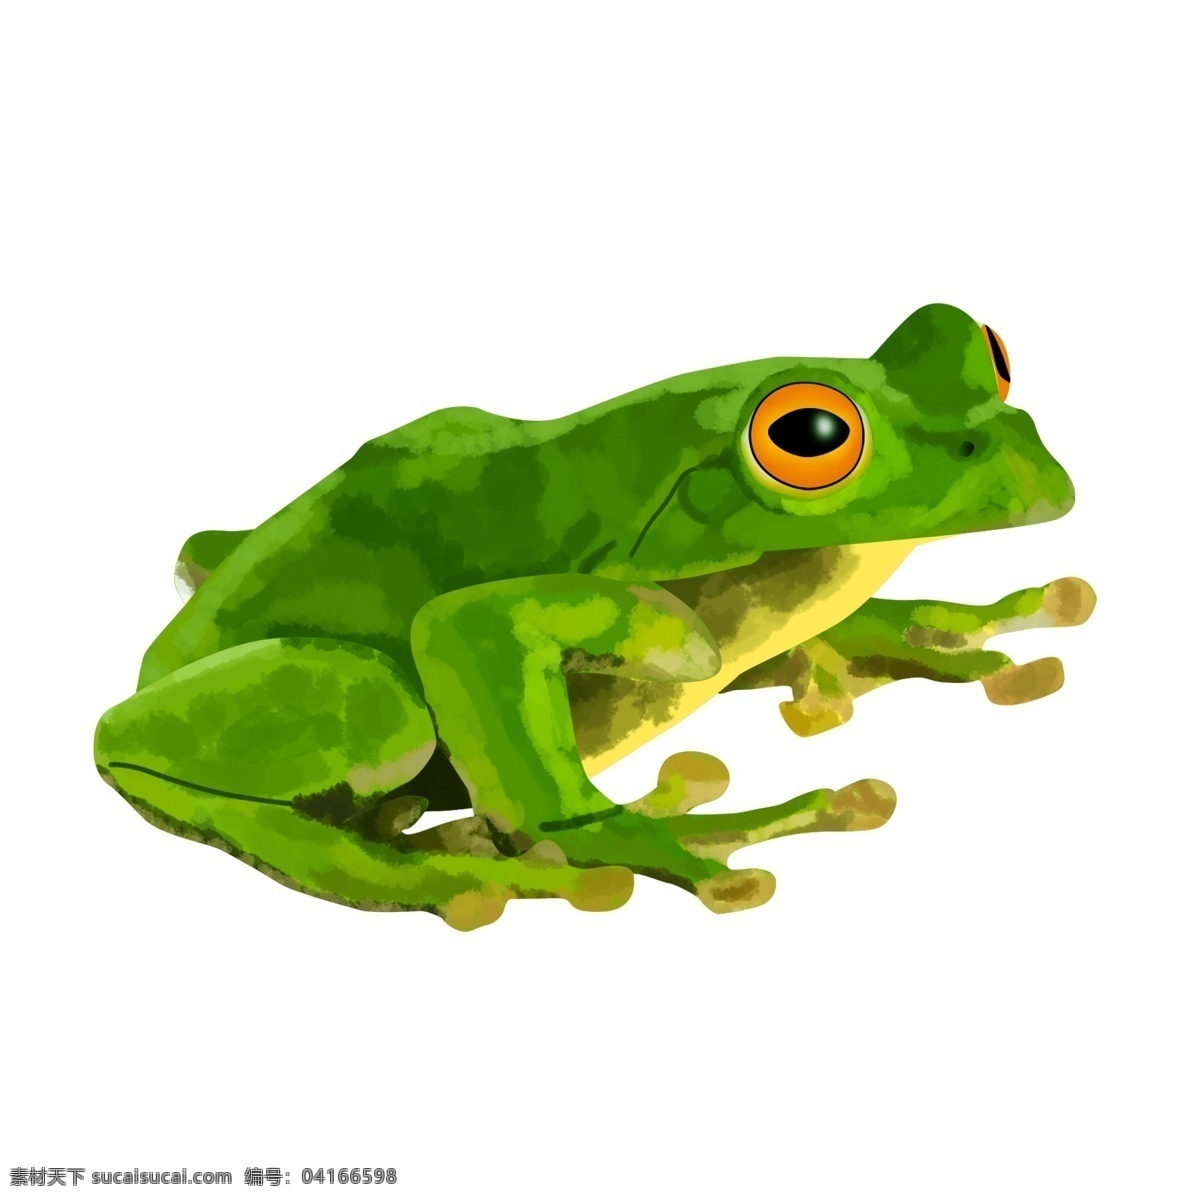 绿色的青蛙 青蛙 玩具 绿色